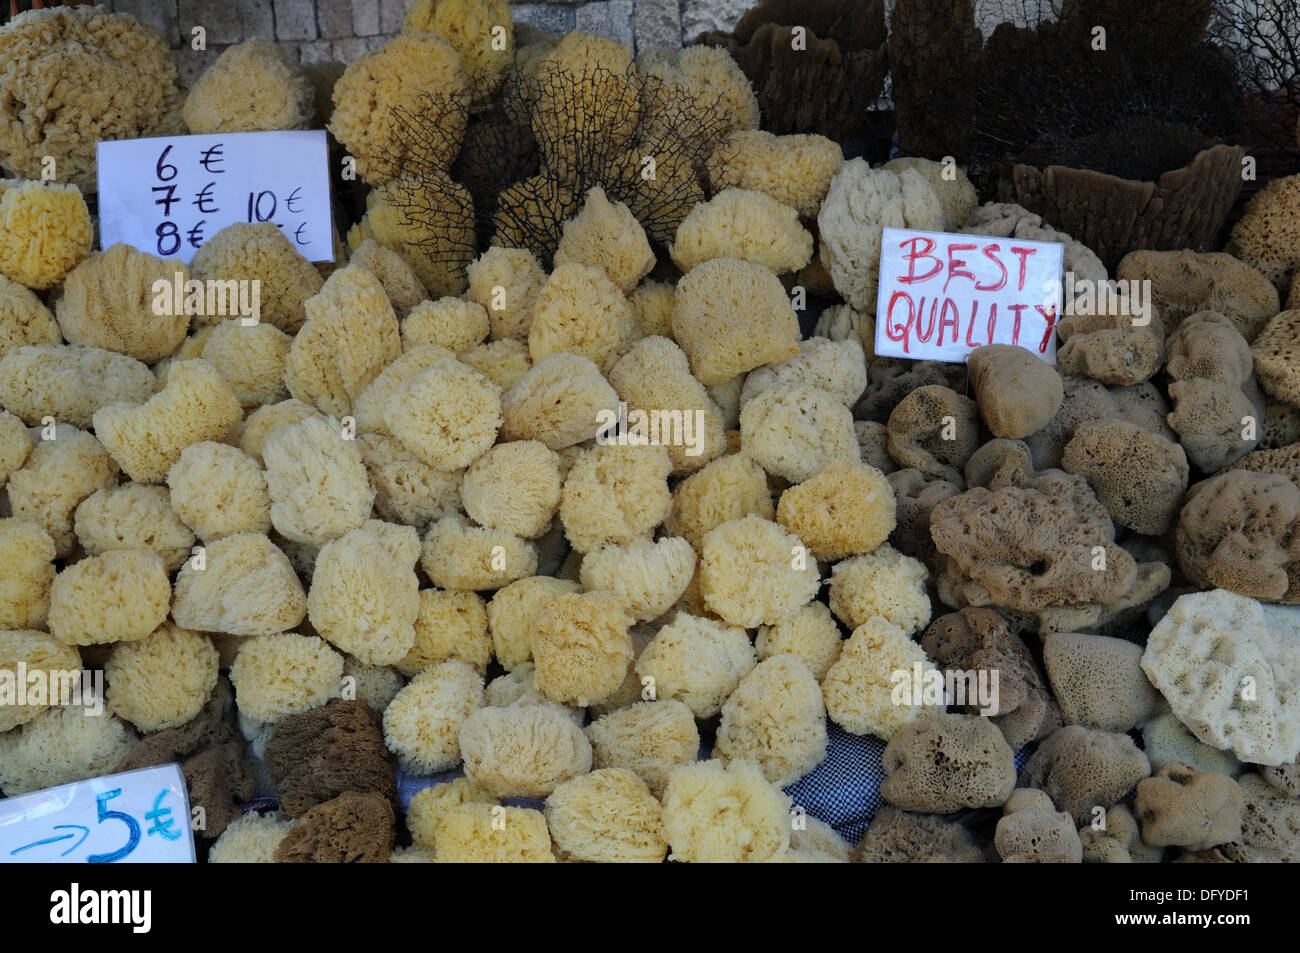 Éponges de mer à vendre dans un marché de la vieille ville de Rhodes, Grèce Banque D'Images